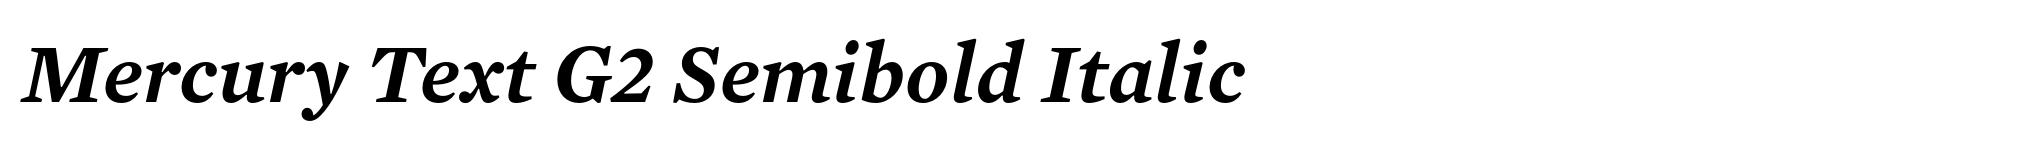 Mercury Text G2 Semibold Italic image